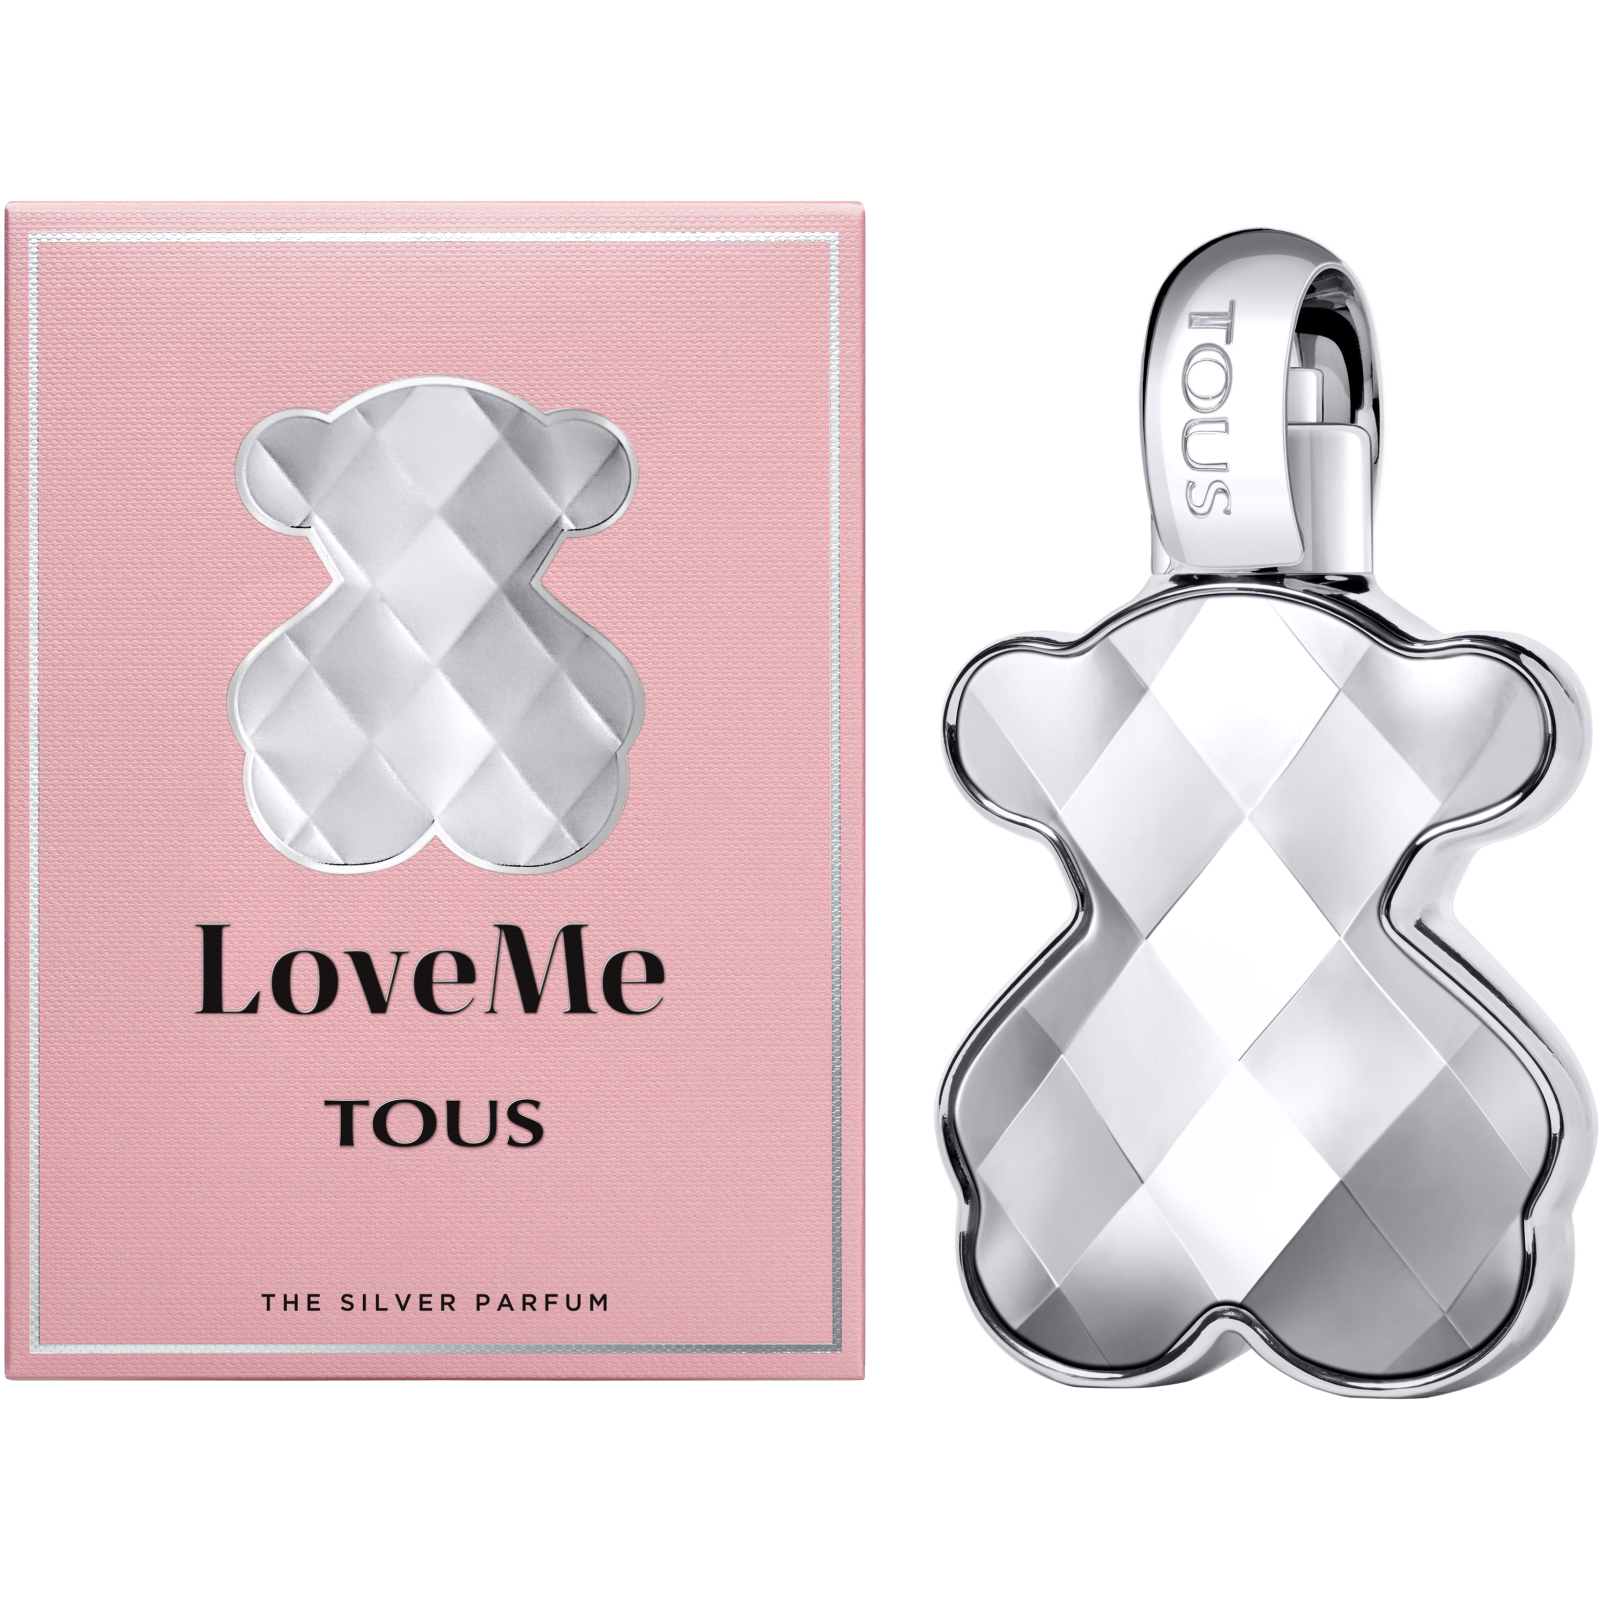 Парфюмированная вода Tous LoveMe The Silver Parfum миниатюра 15 мл (8436550509878) изображение 3